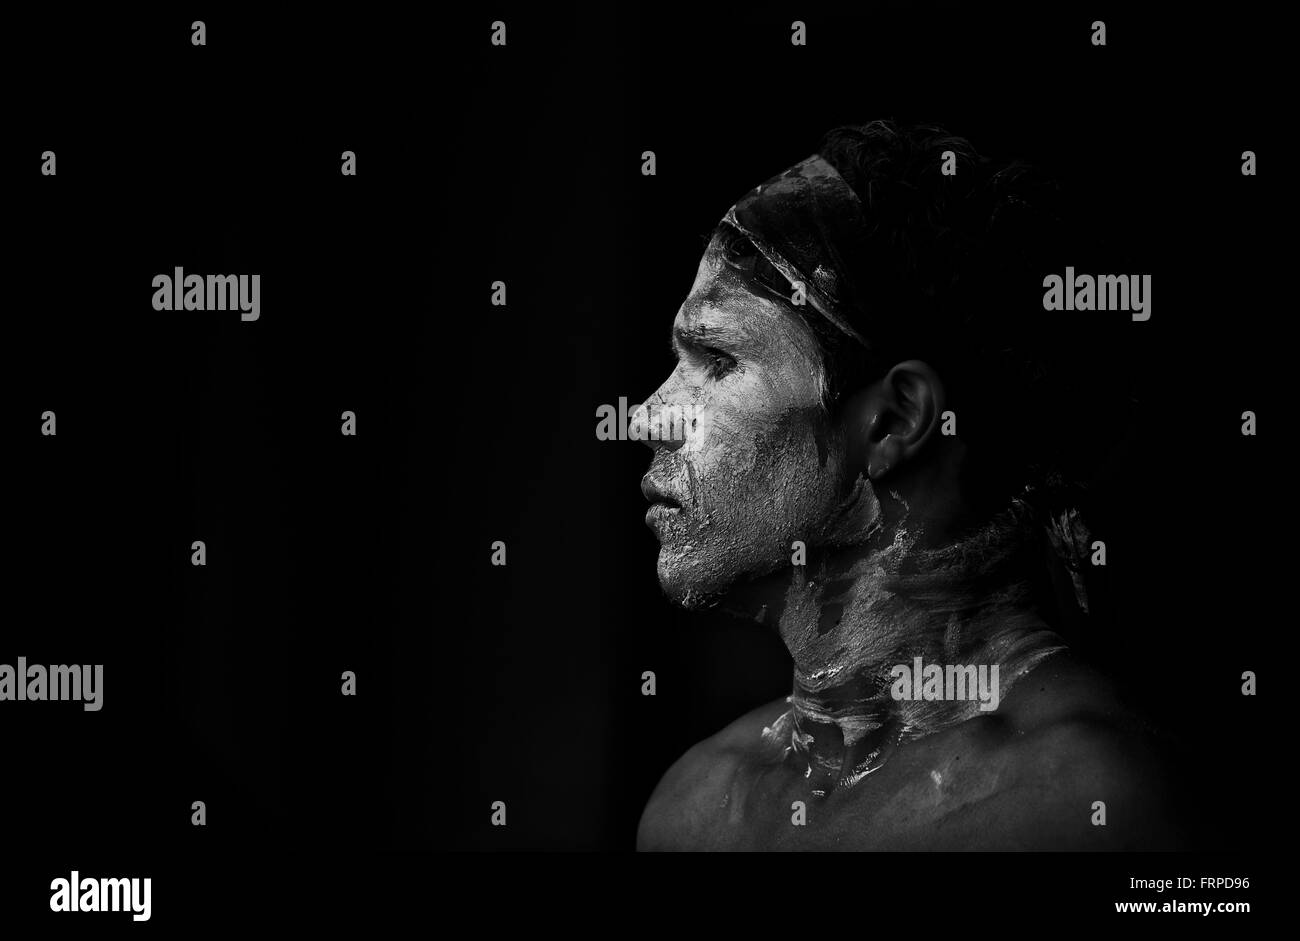 Los aborígenes australianos bailarín con pintura facial de pie en la sombra. Atmosférica retrato de perfil en blanco y negro . Foto de stock